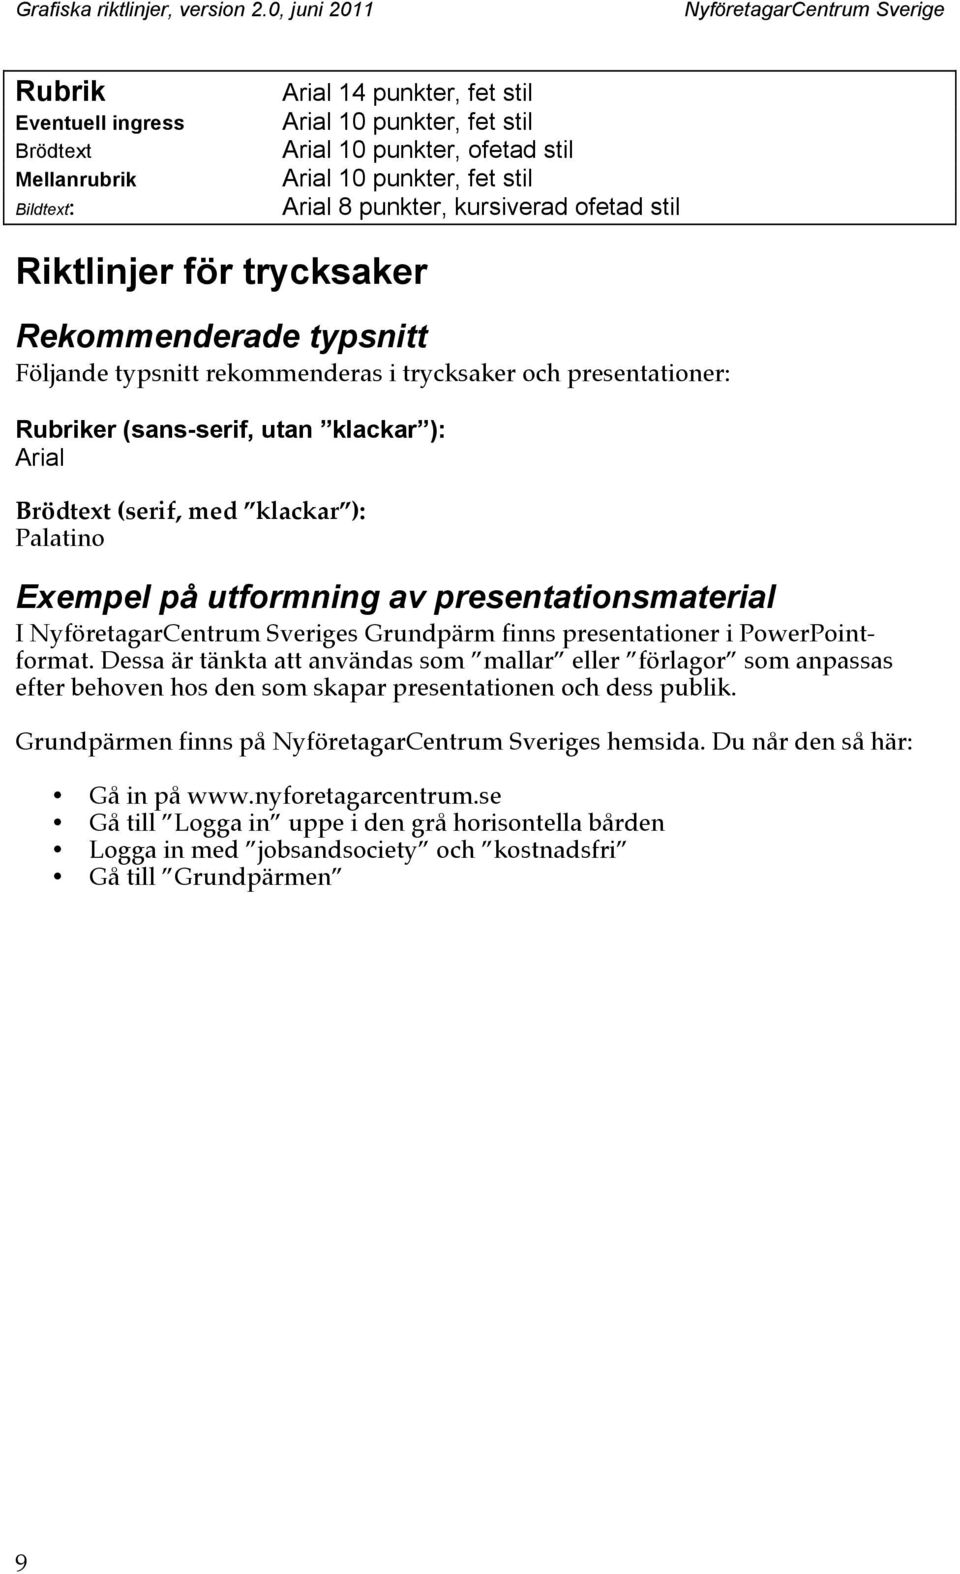 ): Palatino Exempel på utformning av presentationsmaterial I s Grundpärm finns presentationer i PowerPointformat.